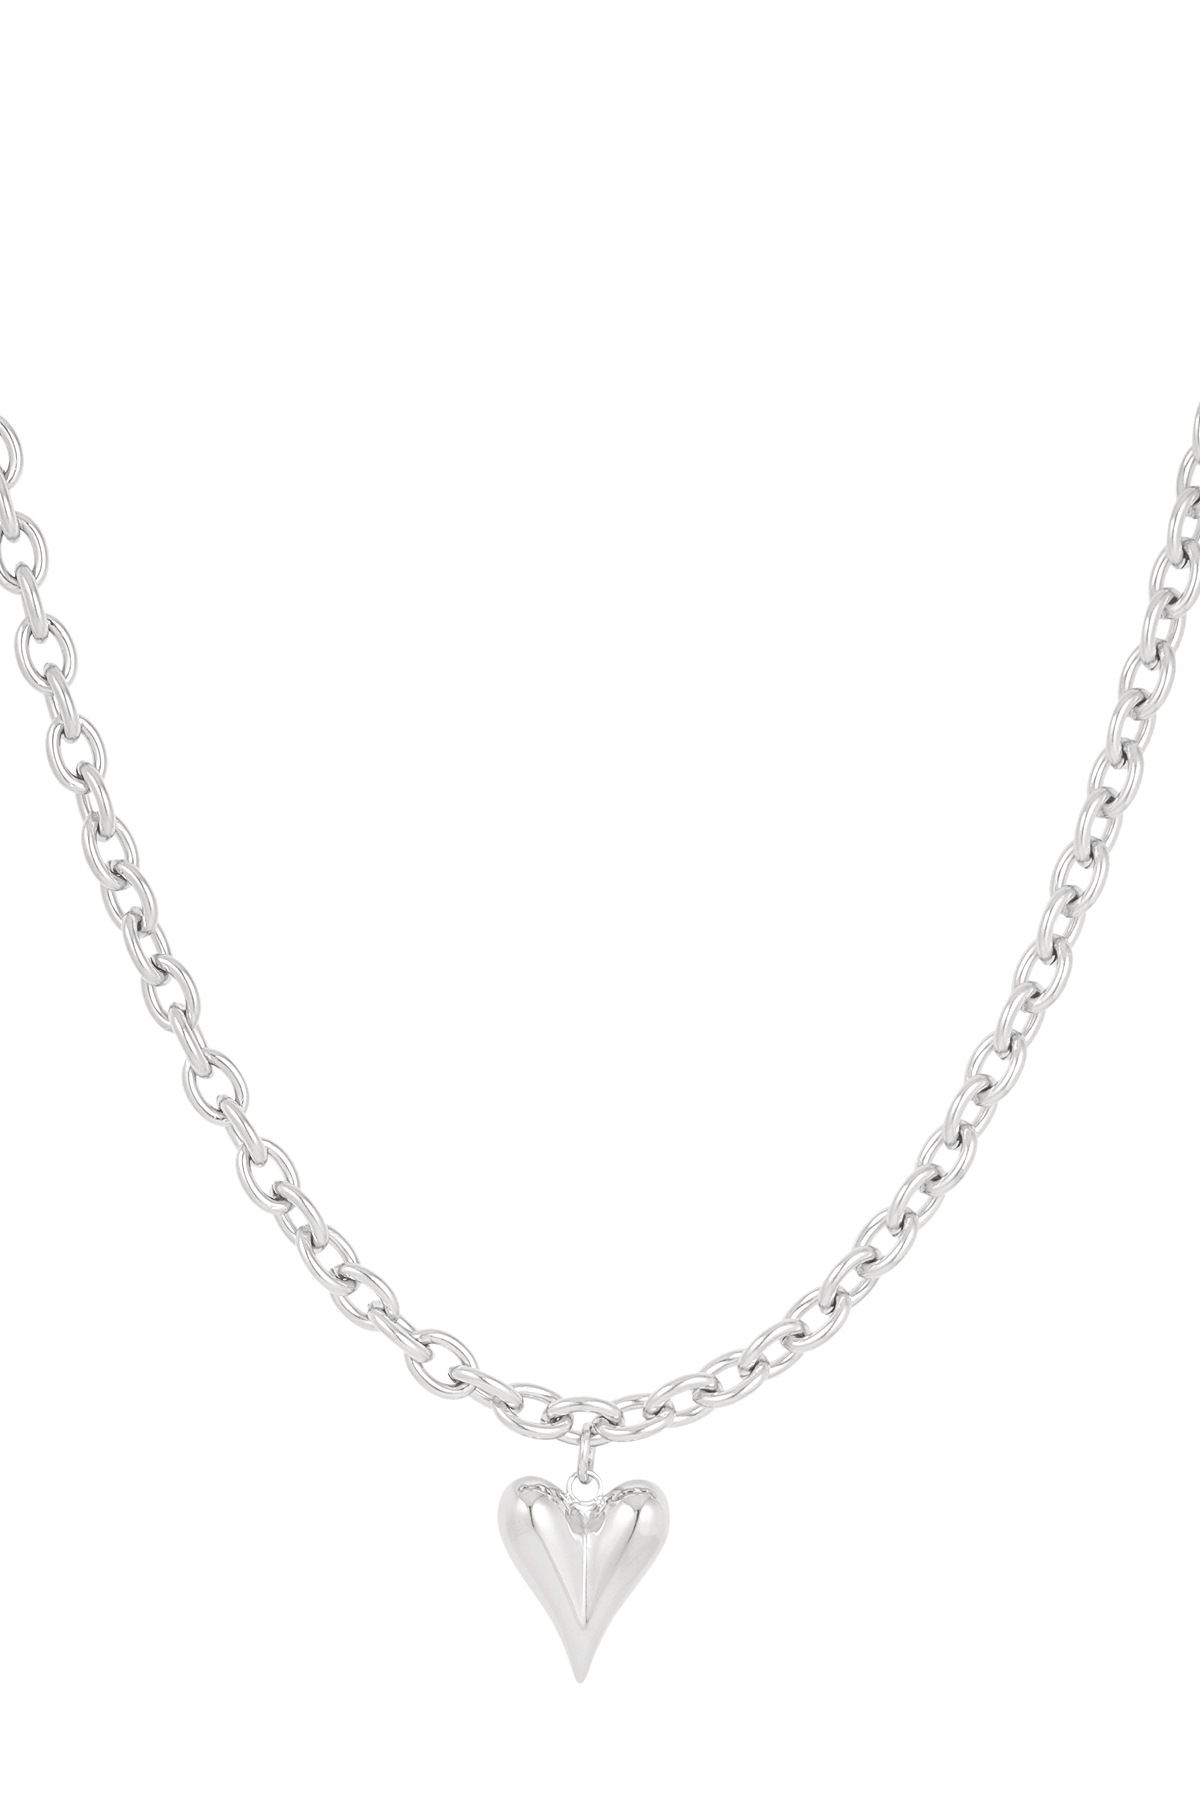 Halskette Liebesregeln - Silber h5 